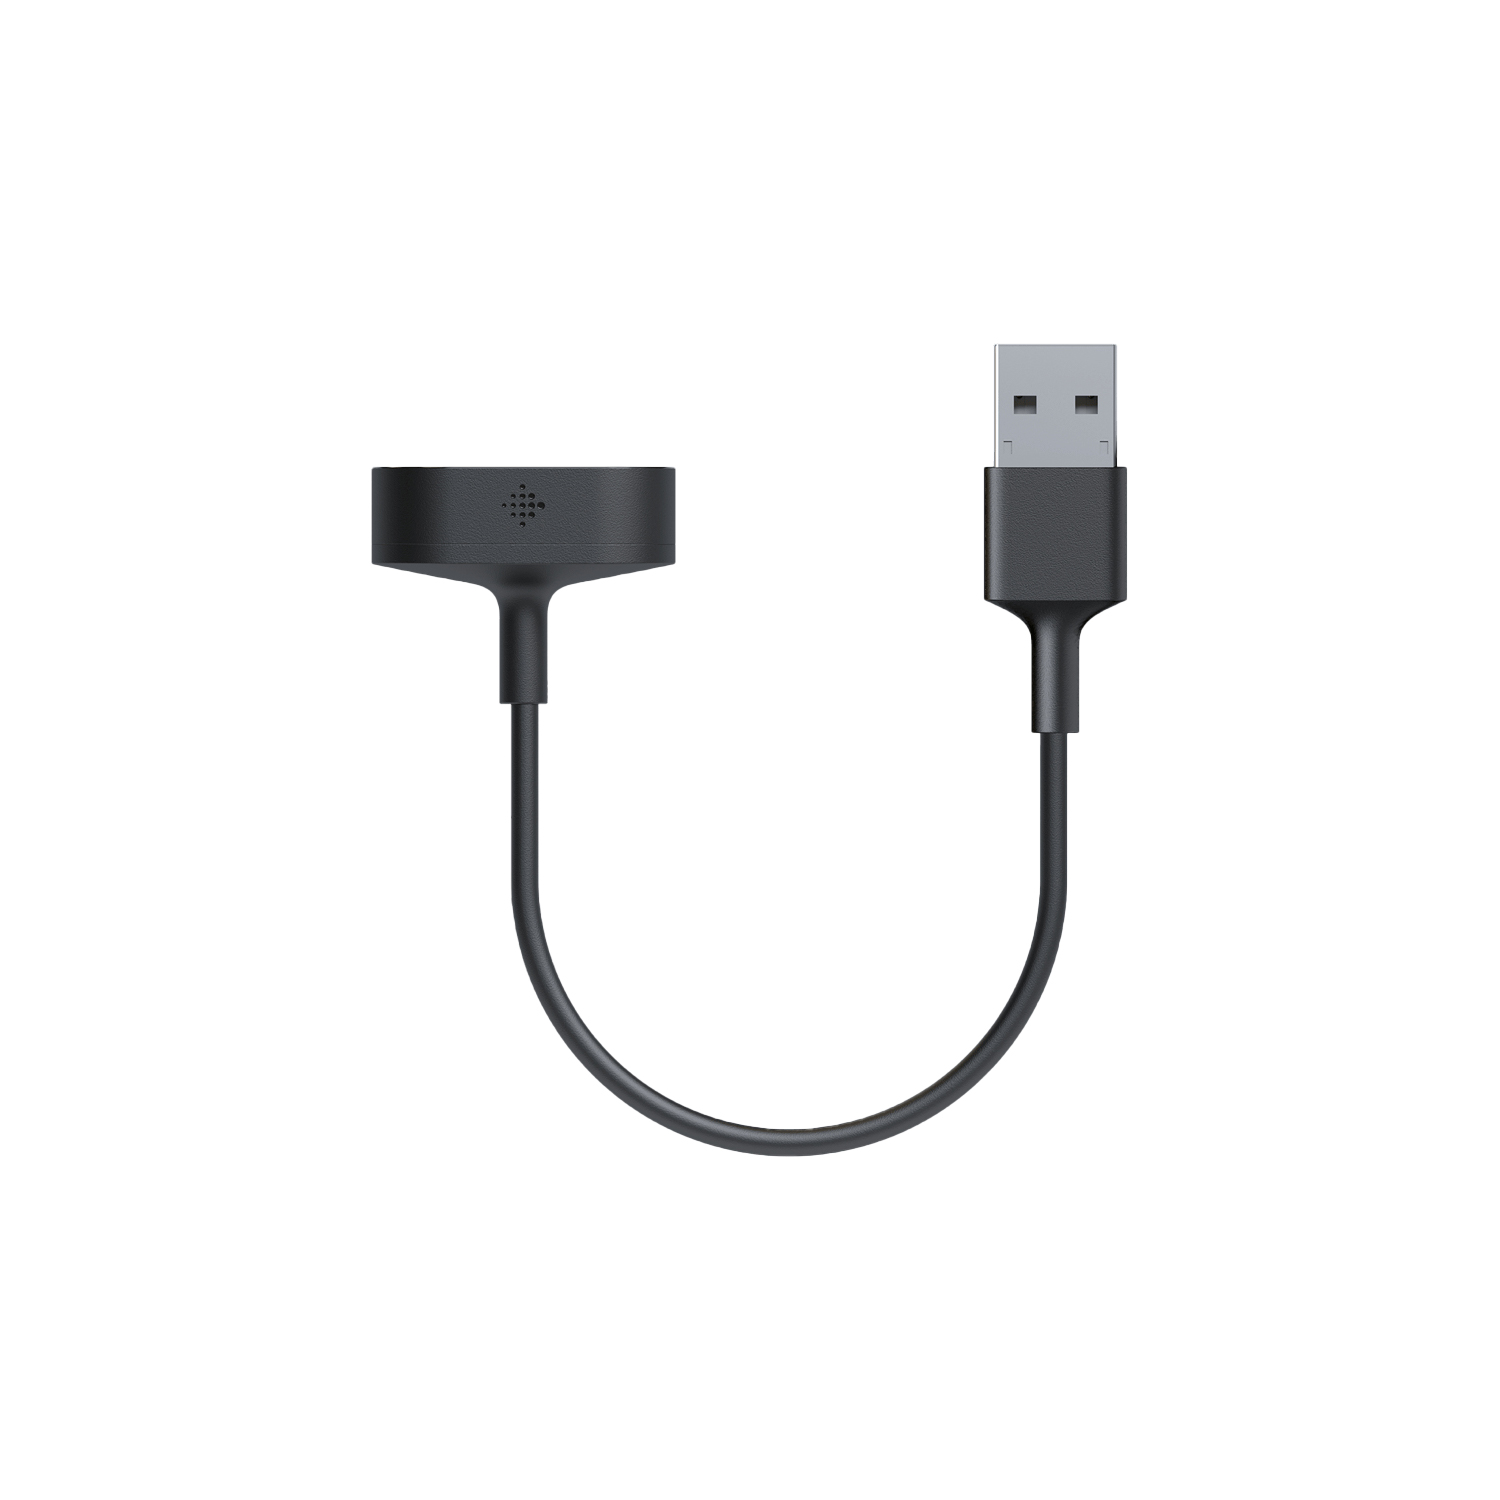 Fitbit Inspire 2 Retail Charging Cable | Fitbit Zubehör | Ladekabel | USB-Anschlusskabel zur einfachen Verbindung an Netzteilen | Kompaktes schickes Design